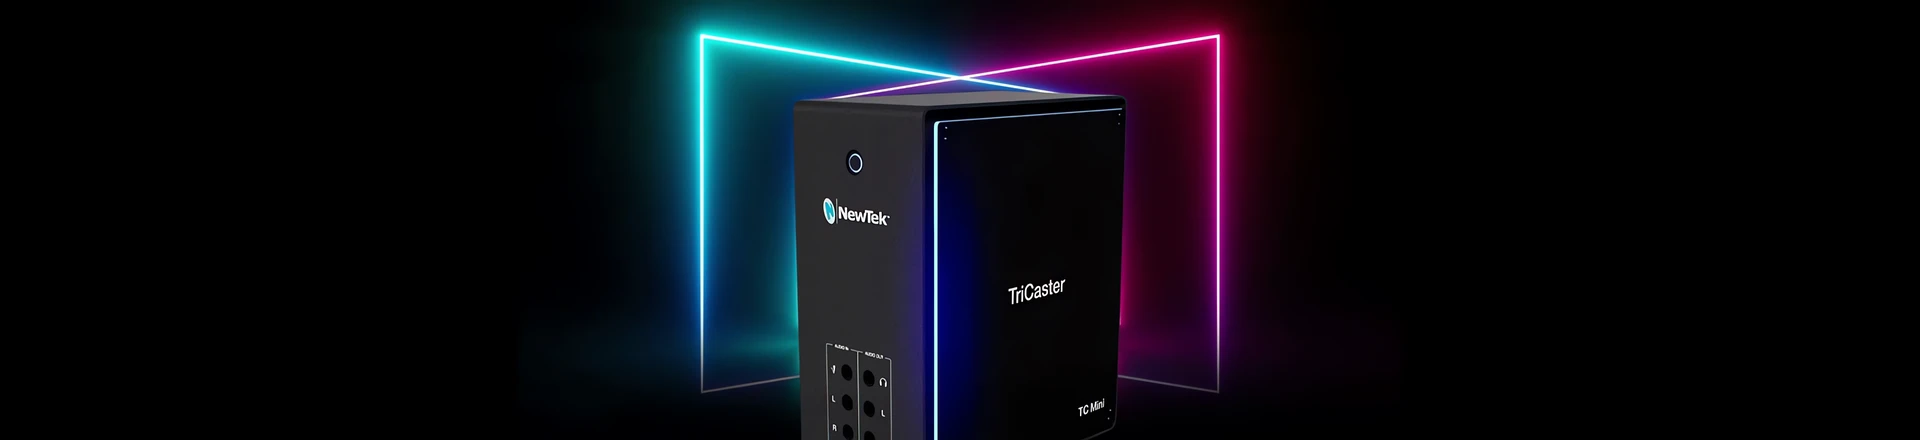 TriCaster Mini 4K - kompaktowy system produkcji wideo od NewTek